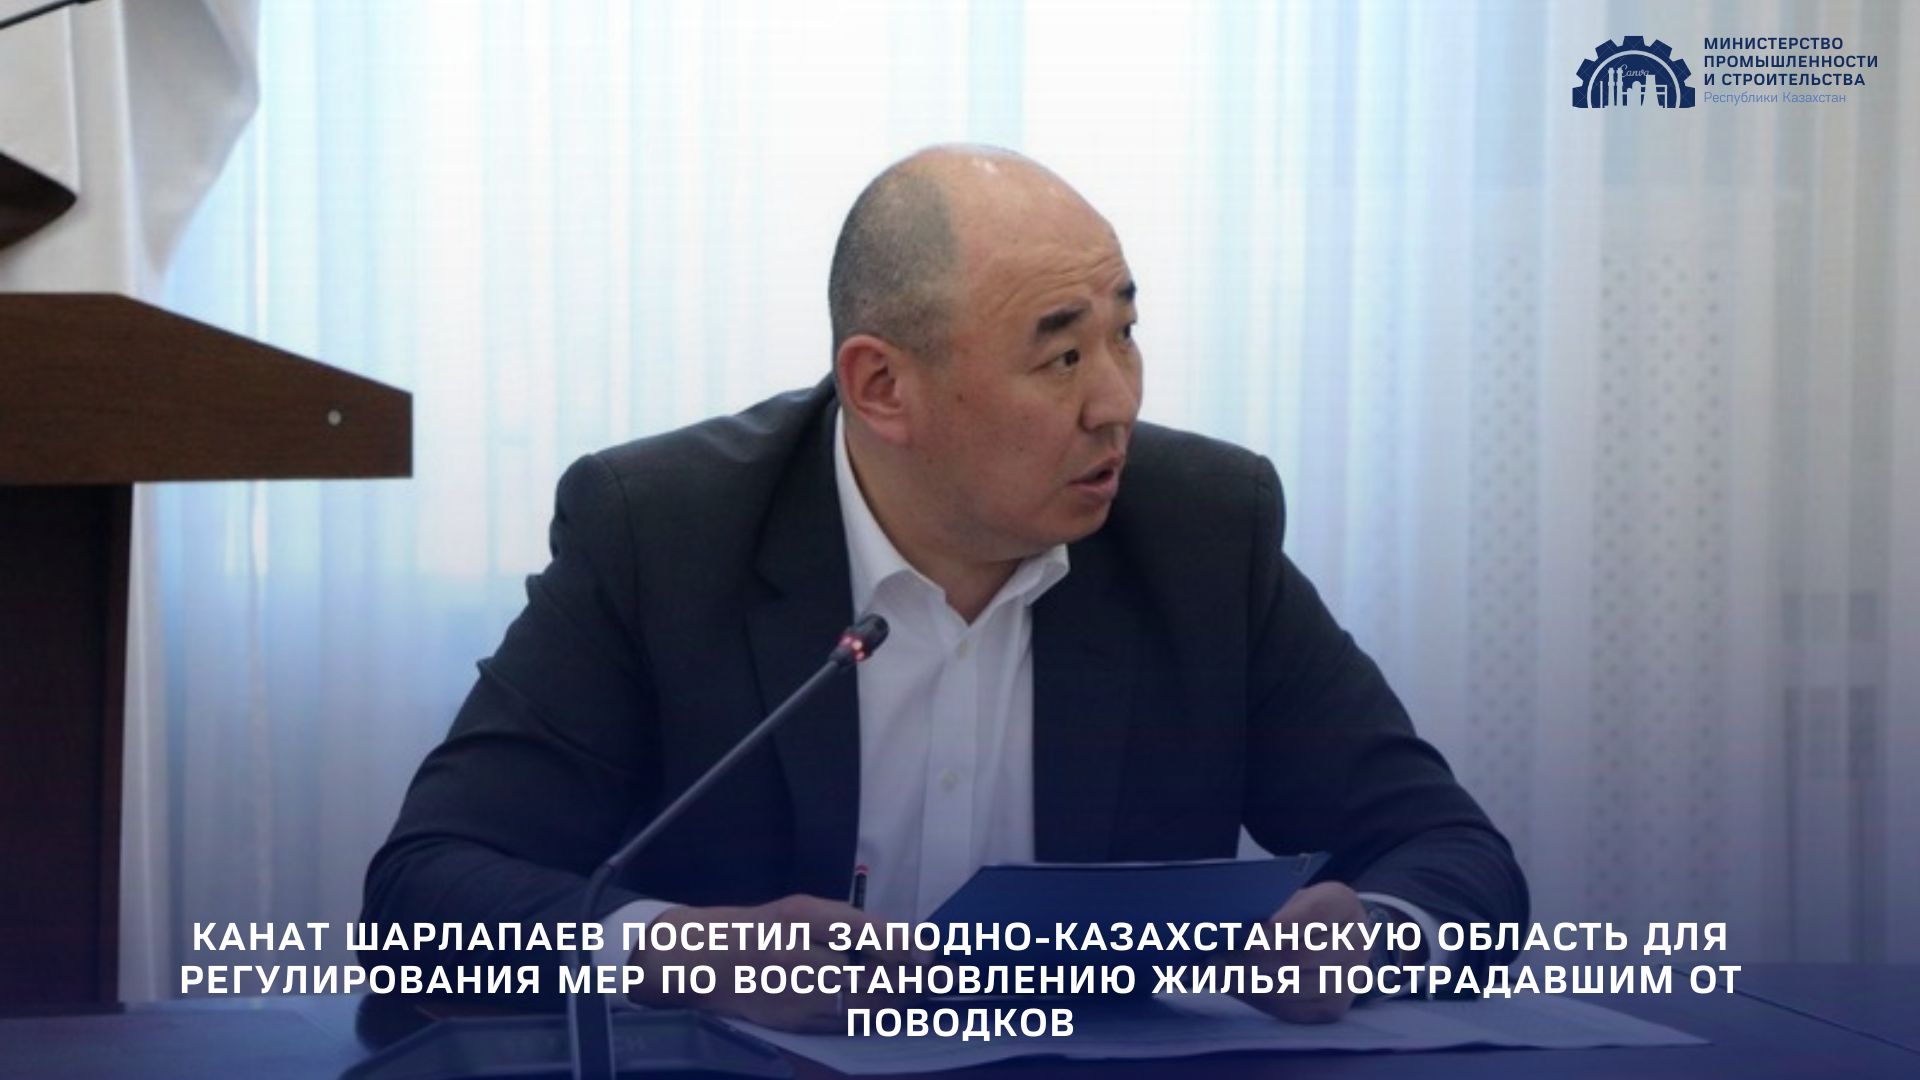 Канат Шарлапаев посетил Западно-Казахстанскую область для регулирования мер по восстановлению жилья пострадавшим от паводков